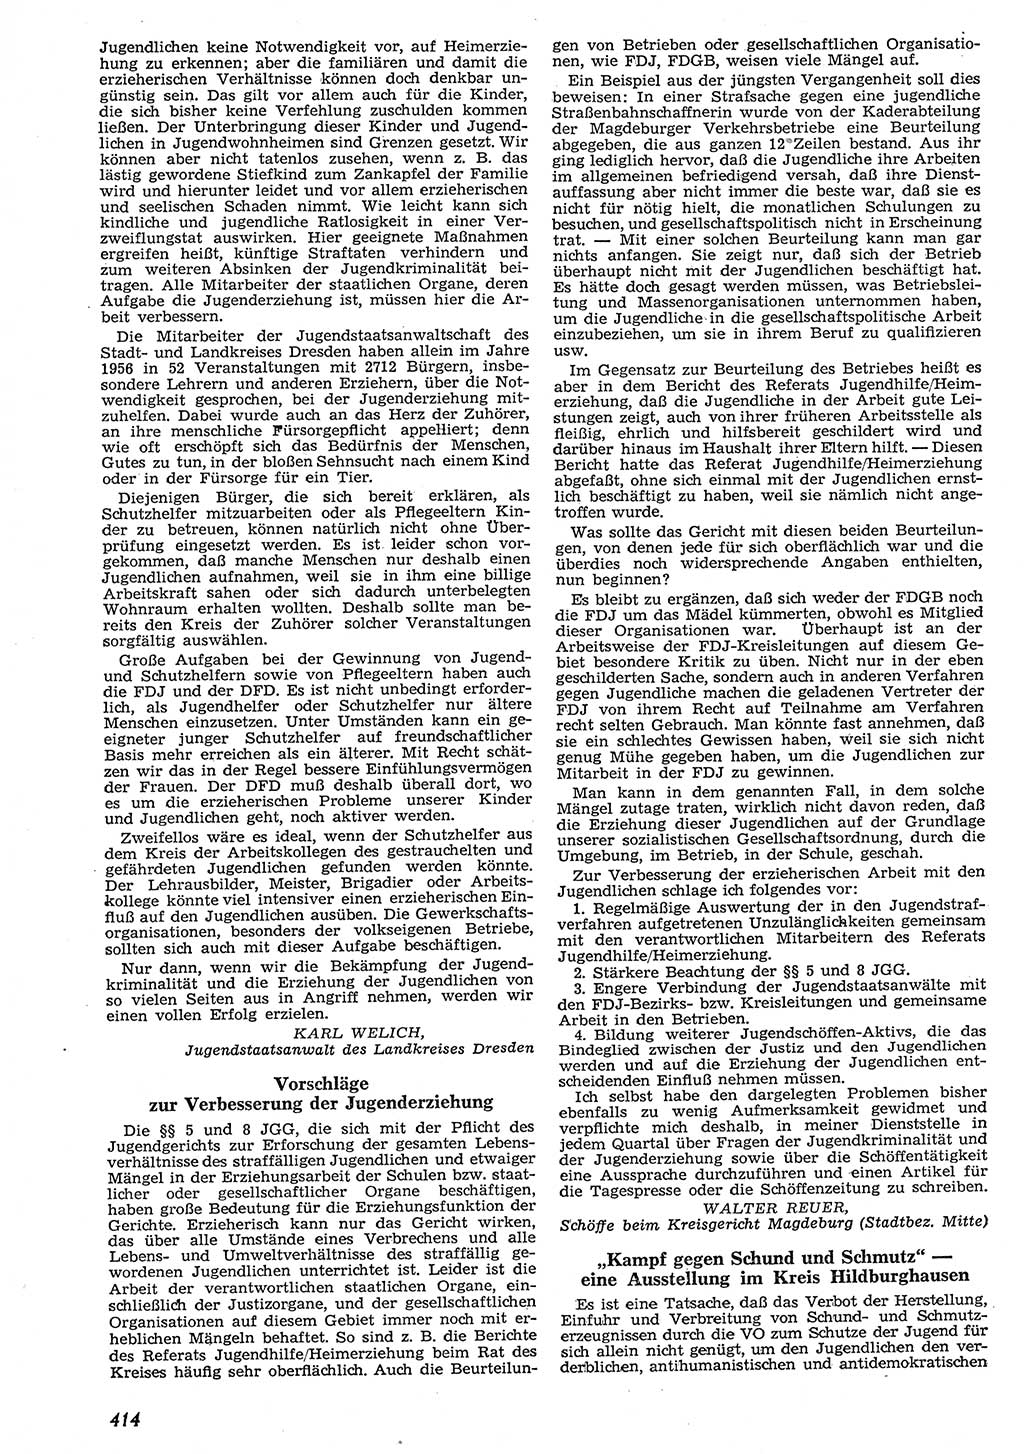 Neue Justiz (NJ), Zeitschrift für Recht und Rechtswissenschaft [Deutsche Demokratische Republik (DDR)], 10. Jahrgang 1956, Seite 414 (NJ DDR 1956, S. 414)